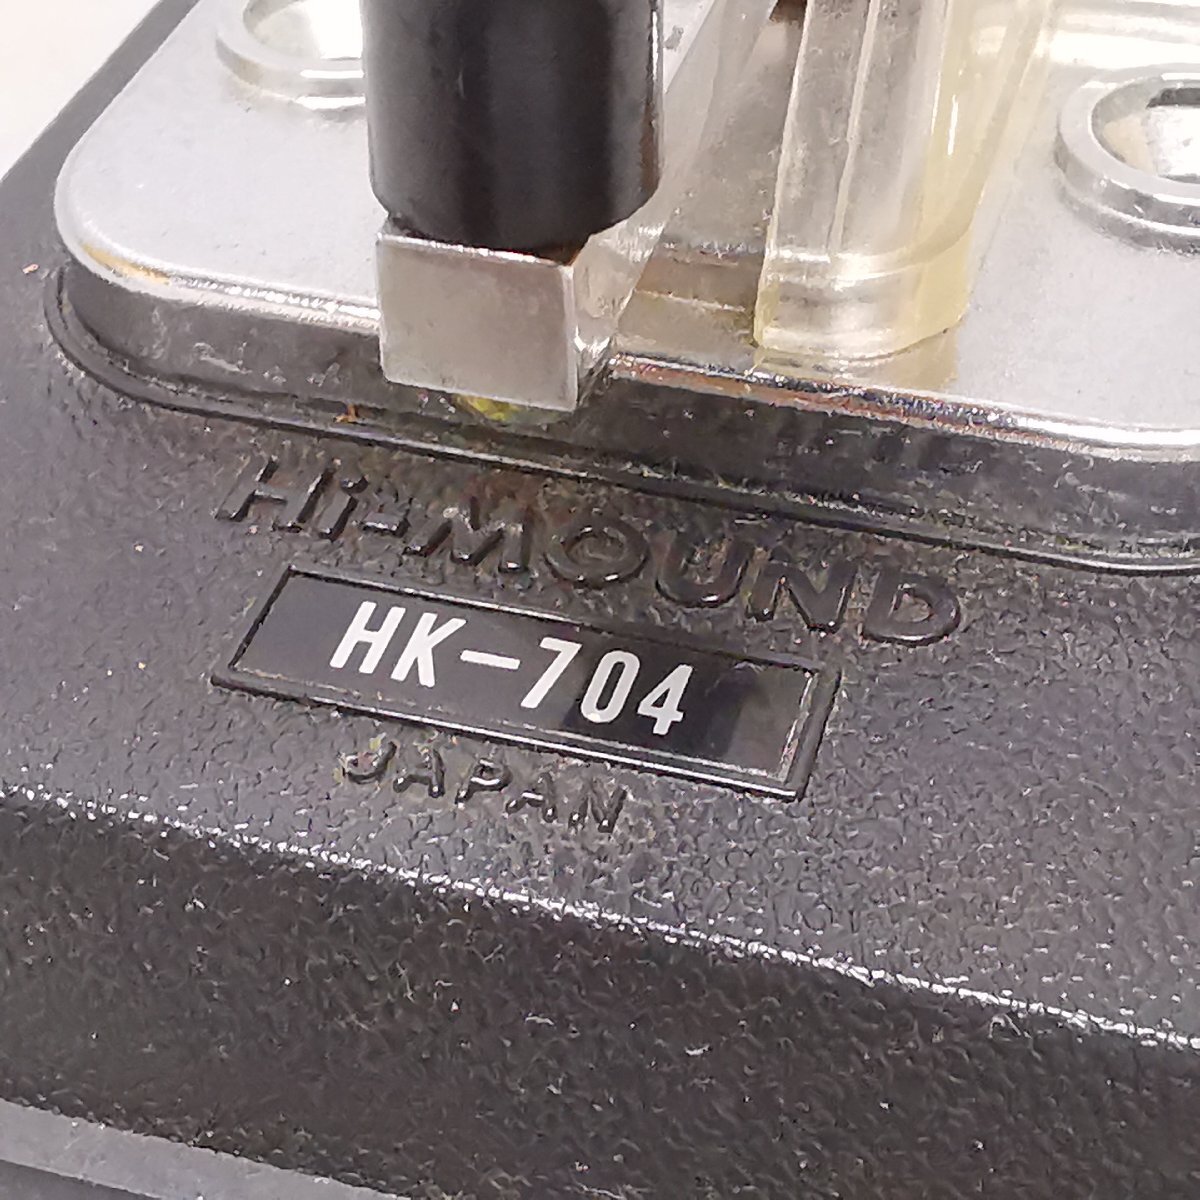 HIMOUND ハイモンド HK-704 電鍵 縦電鍵 縦振り電鍵 Hi-Mound アマチュア無線 モールス信号 昭和レトロ ヴィンテージ 当時モノ 現状品Z5654の画像2